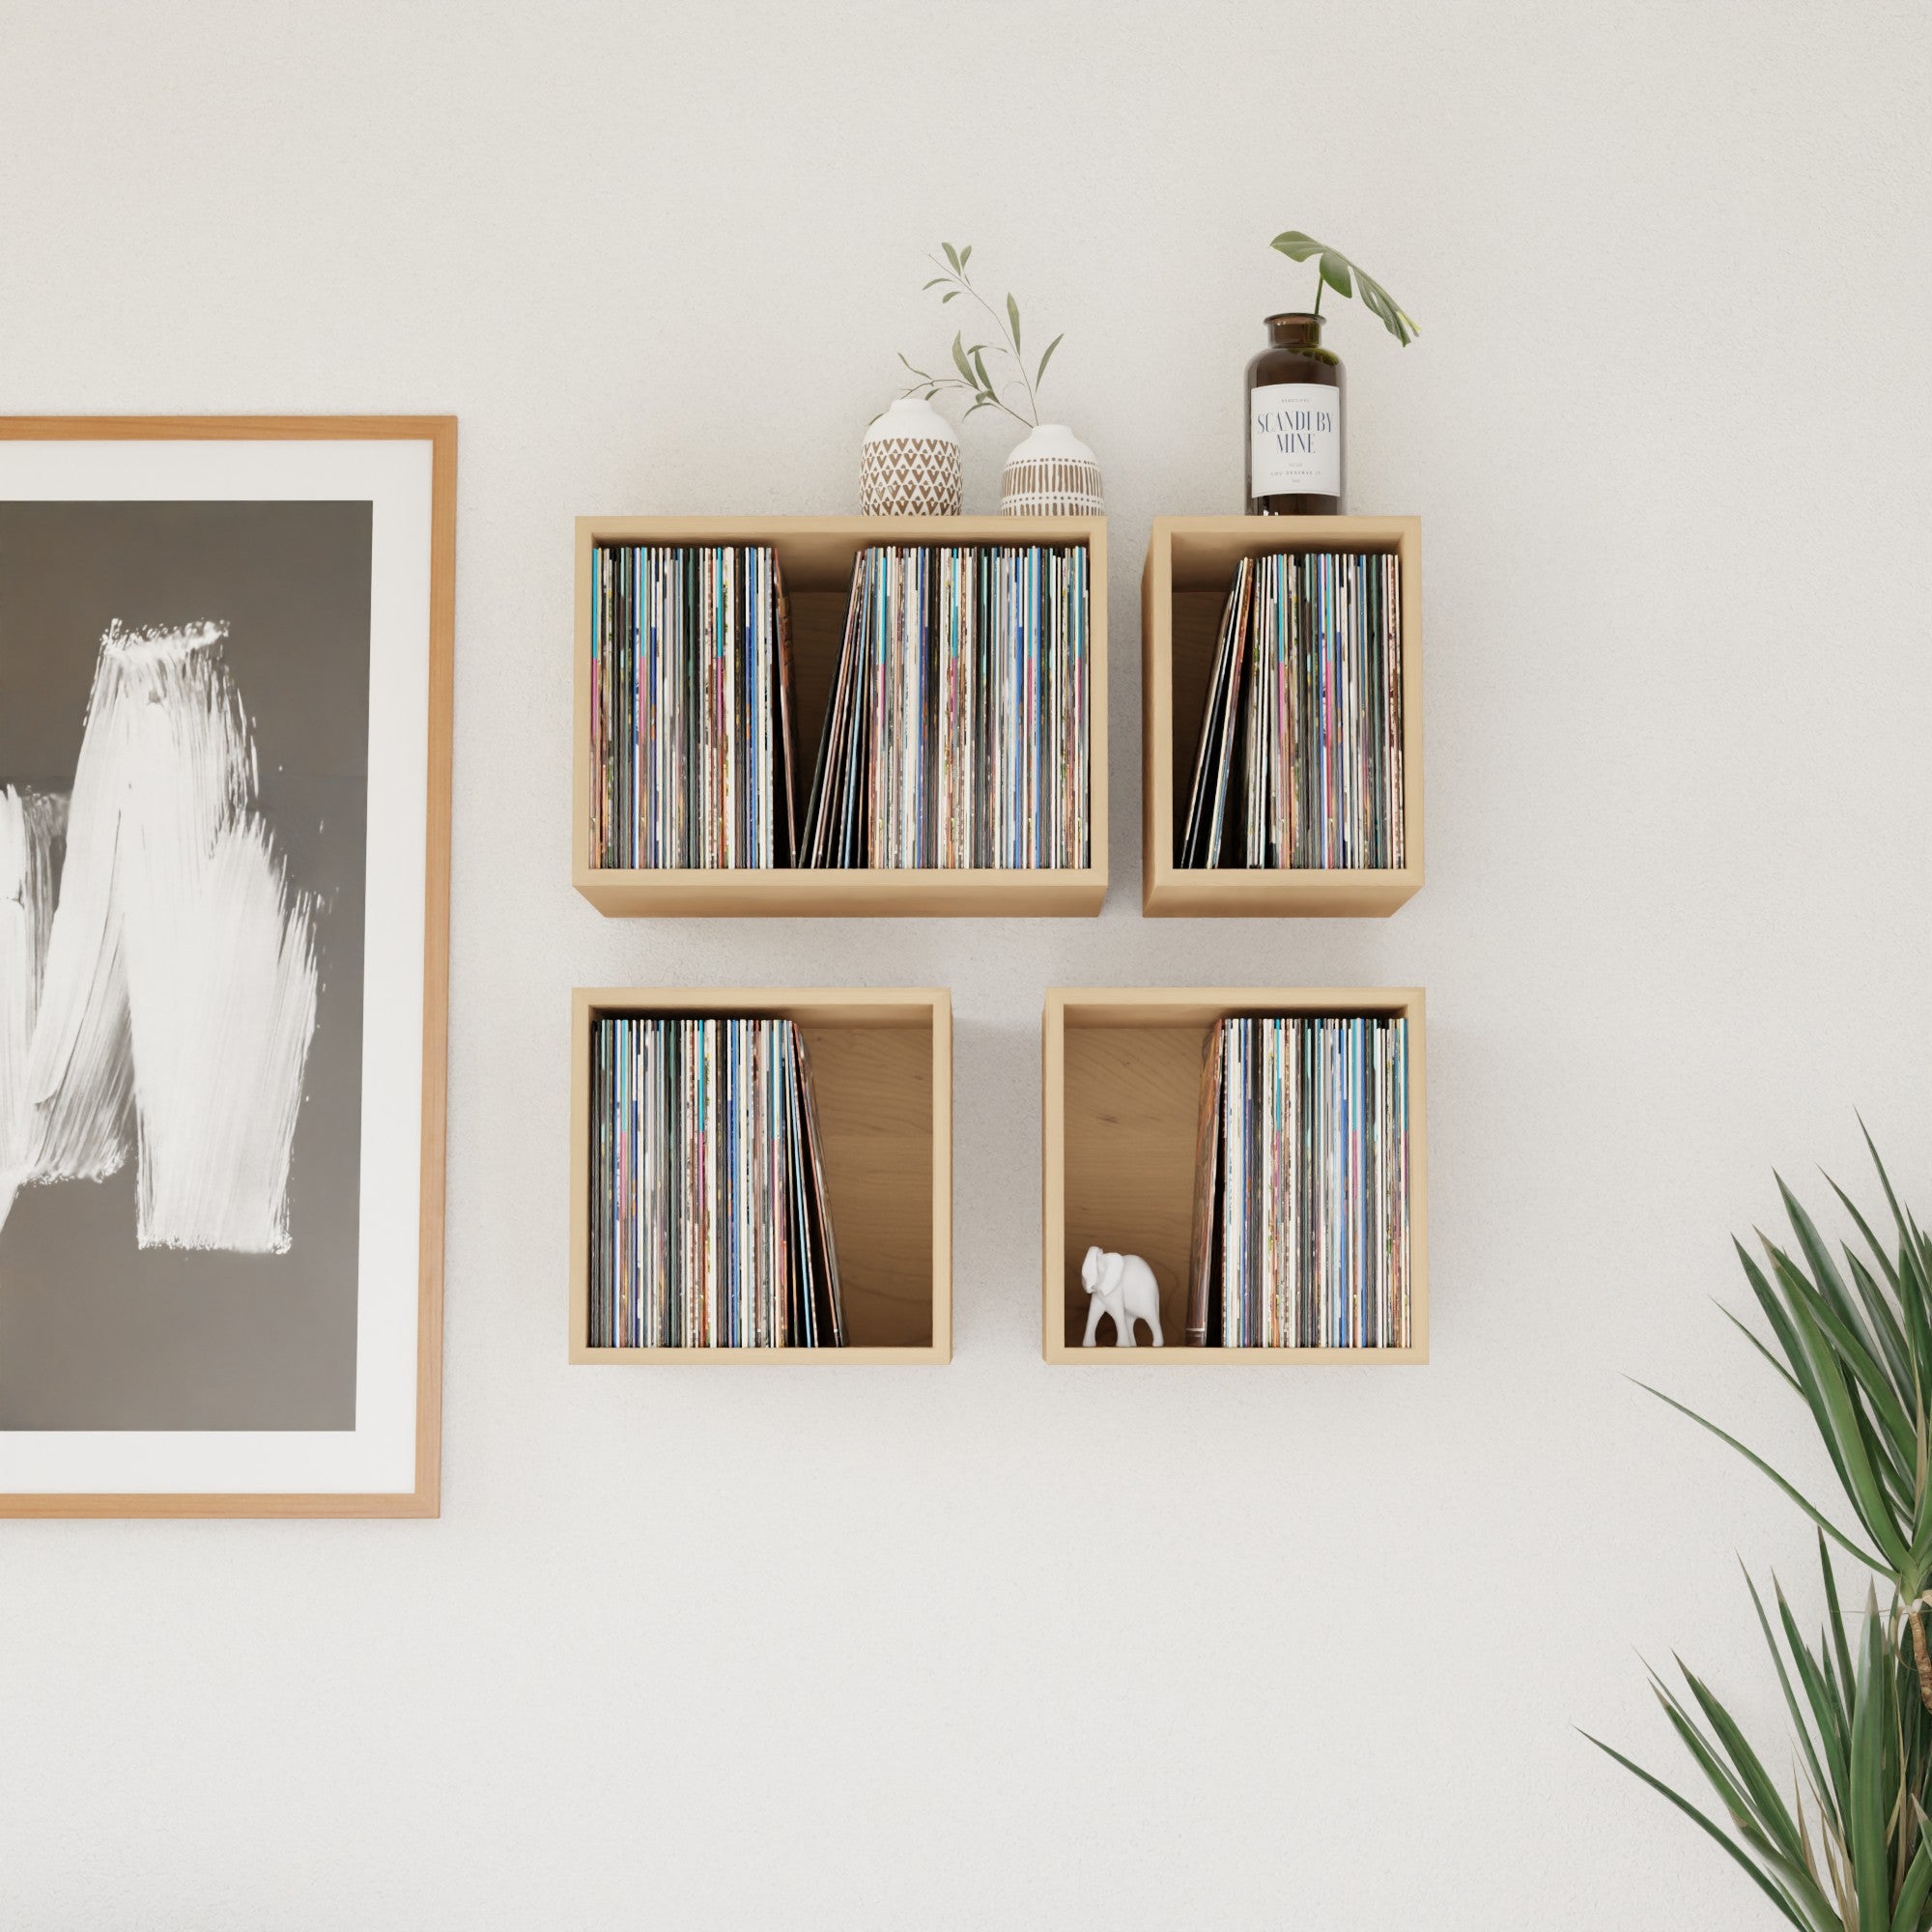 Maple Record Storage Shelves - Krøvel Furniture Co. Handmade in Maine